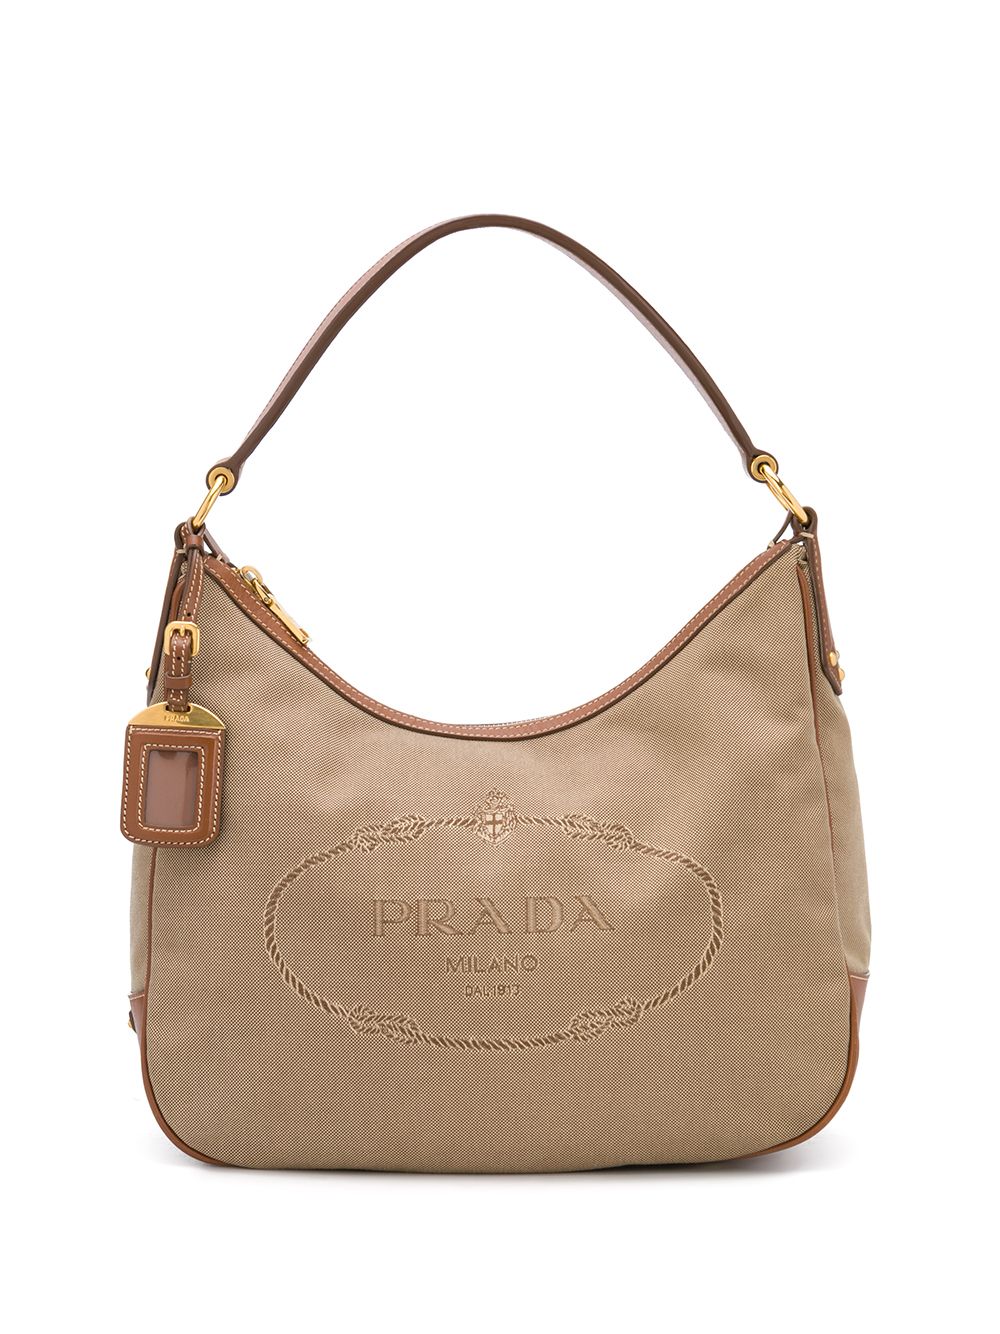 фото Prada pre-owned сумка-тоут с вышитым логотипом